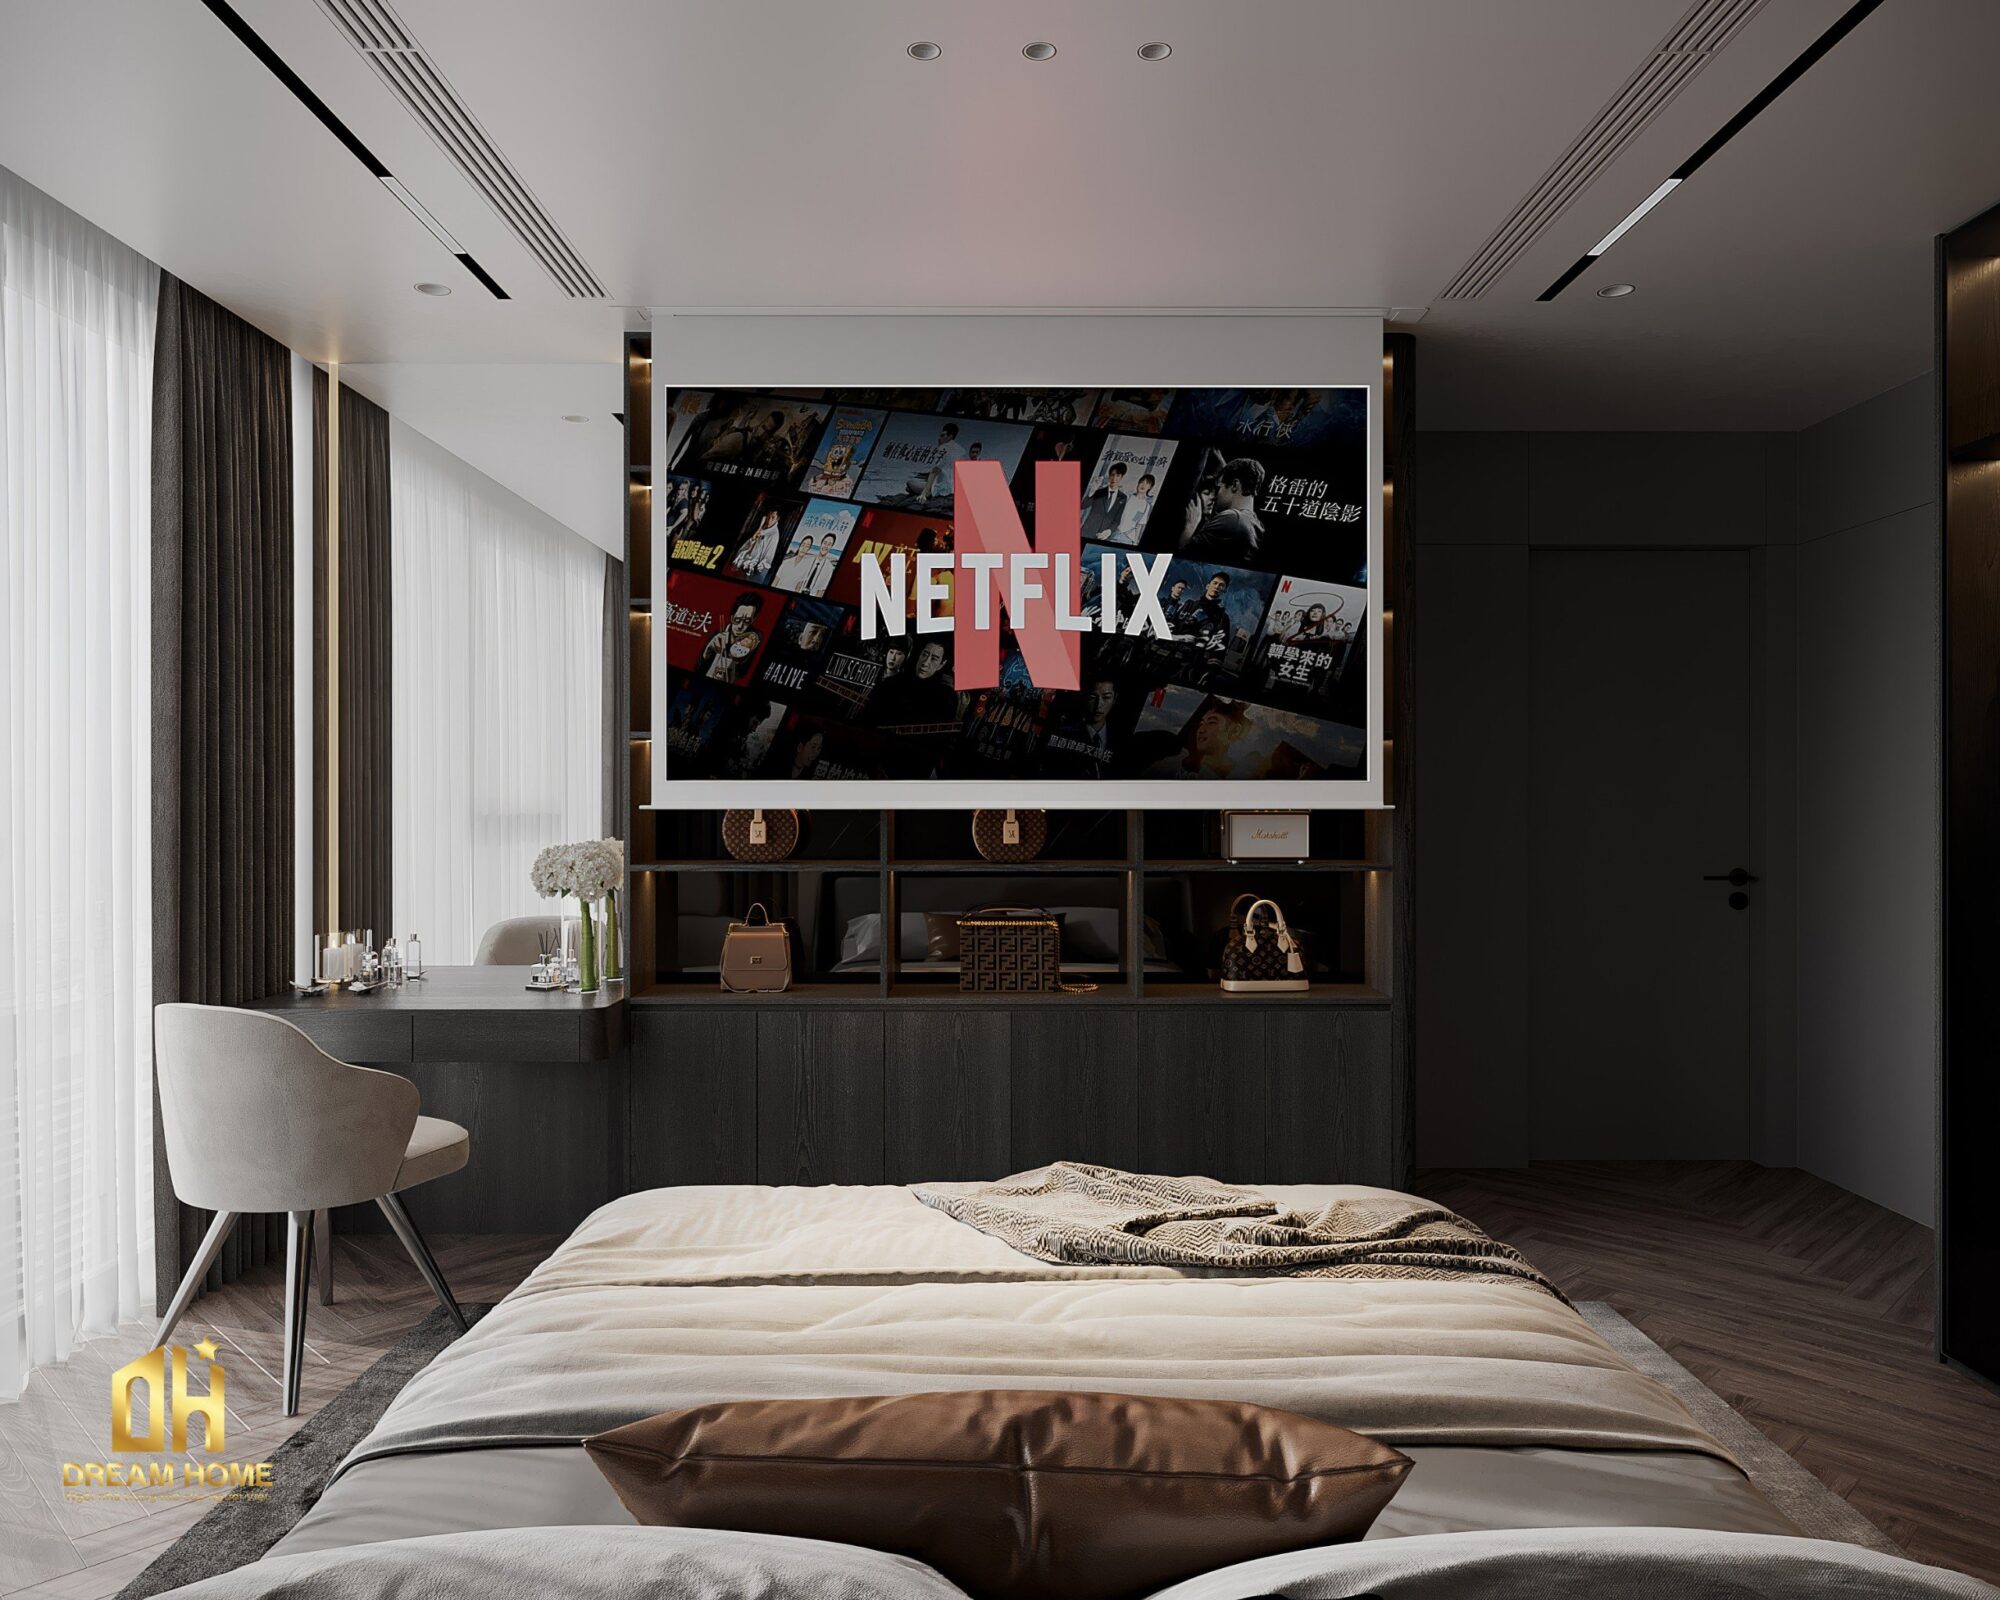 Bạn có thể thưởng thức các bộ phim, chương trình truyền hình tại giường của mình một cách thoải mái và tiện lợi.